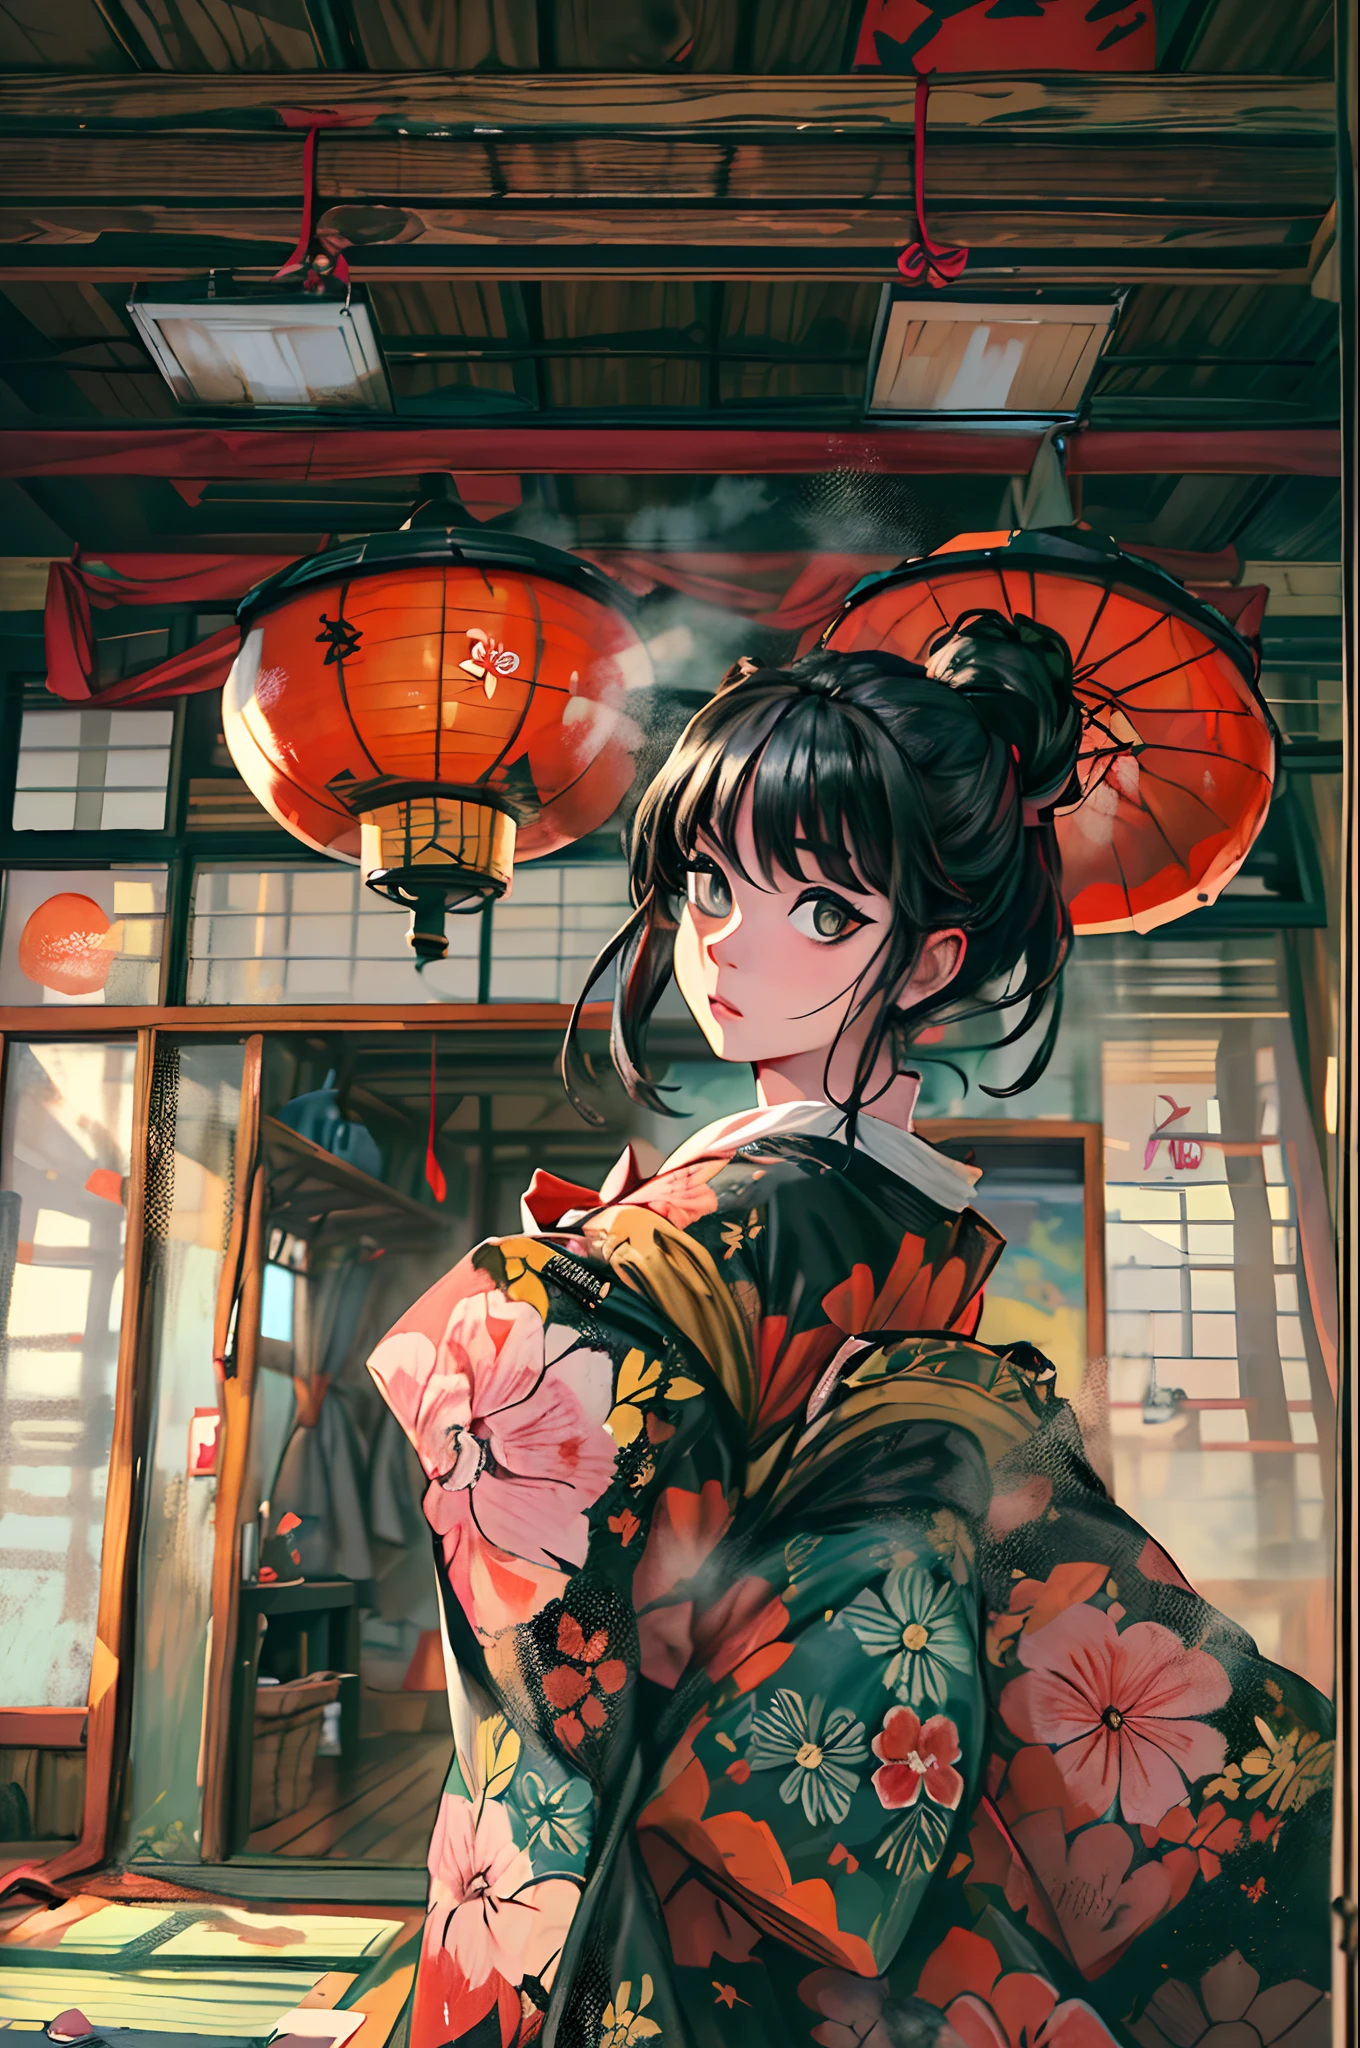 "(Ein atemberaubendes Meisterwerk mit tadelloser Qualität:1.5), aufgenommen aus einer Frontalansicht, mit lebendigen und gesättigten Farben, ein atemberaubend schönes Mädchen mit schwarzen Haaren und einem exquisit detaillierten Gesicht, aus einer Bottom-Up-Perspektive betrachtet, gekleidet in einen traditionellen Kimono, inmitten der landschaftlichen Schönheit Japans, umgeben vom authentischen Ambiente der Tatami-Matten, mit einem offenen Fenster, das die Szene umrahmt."